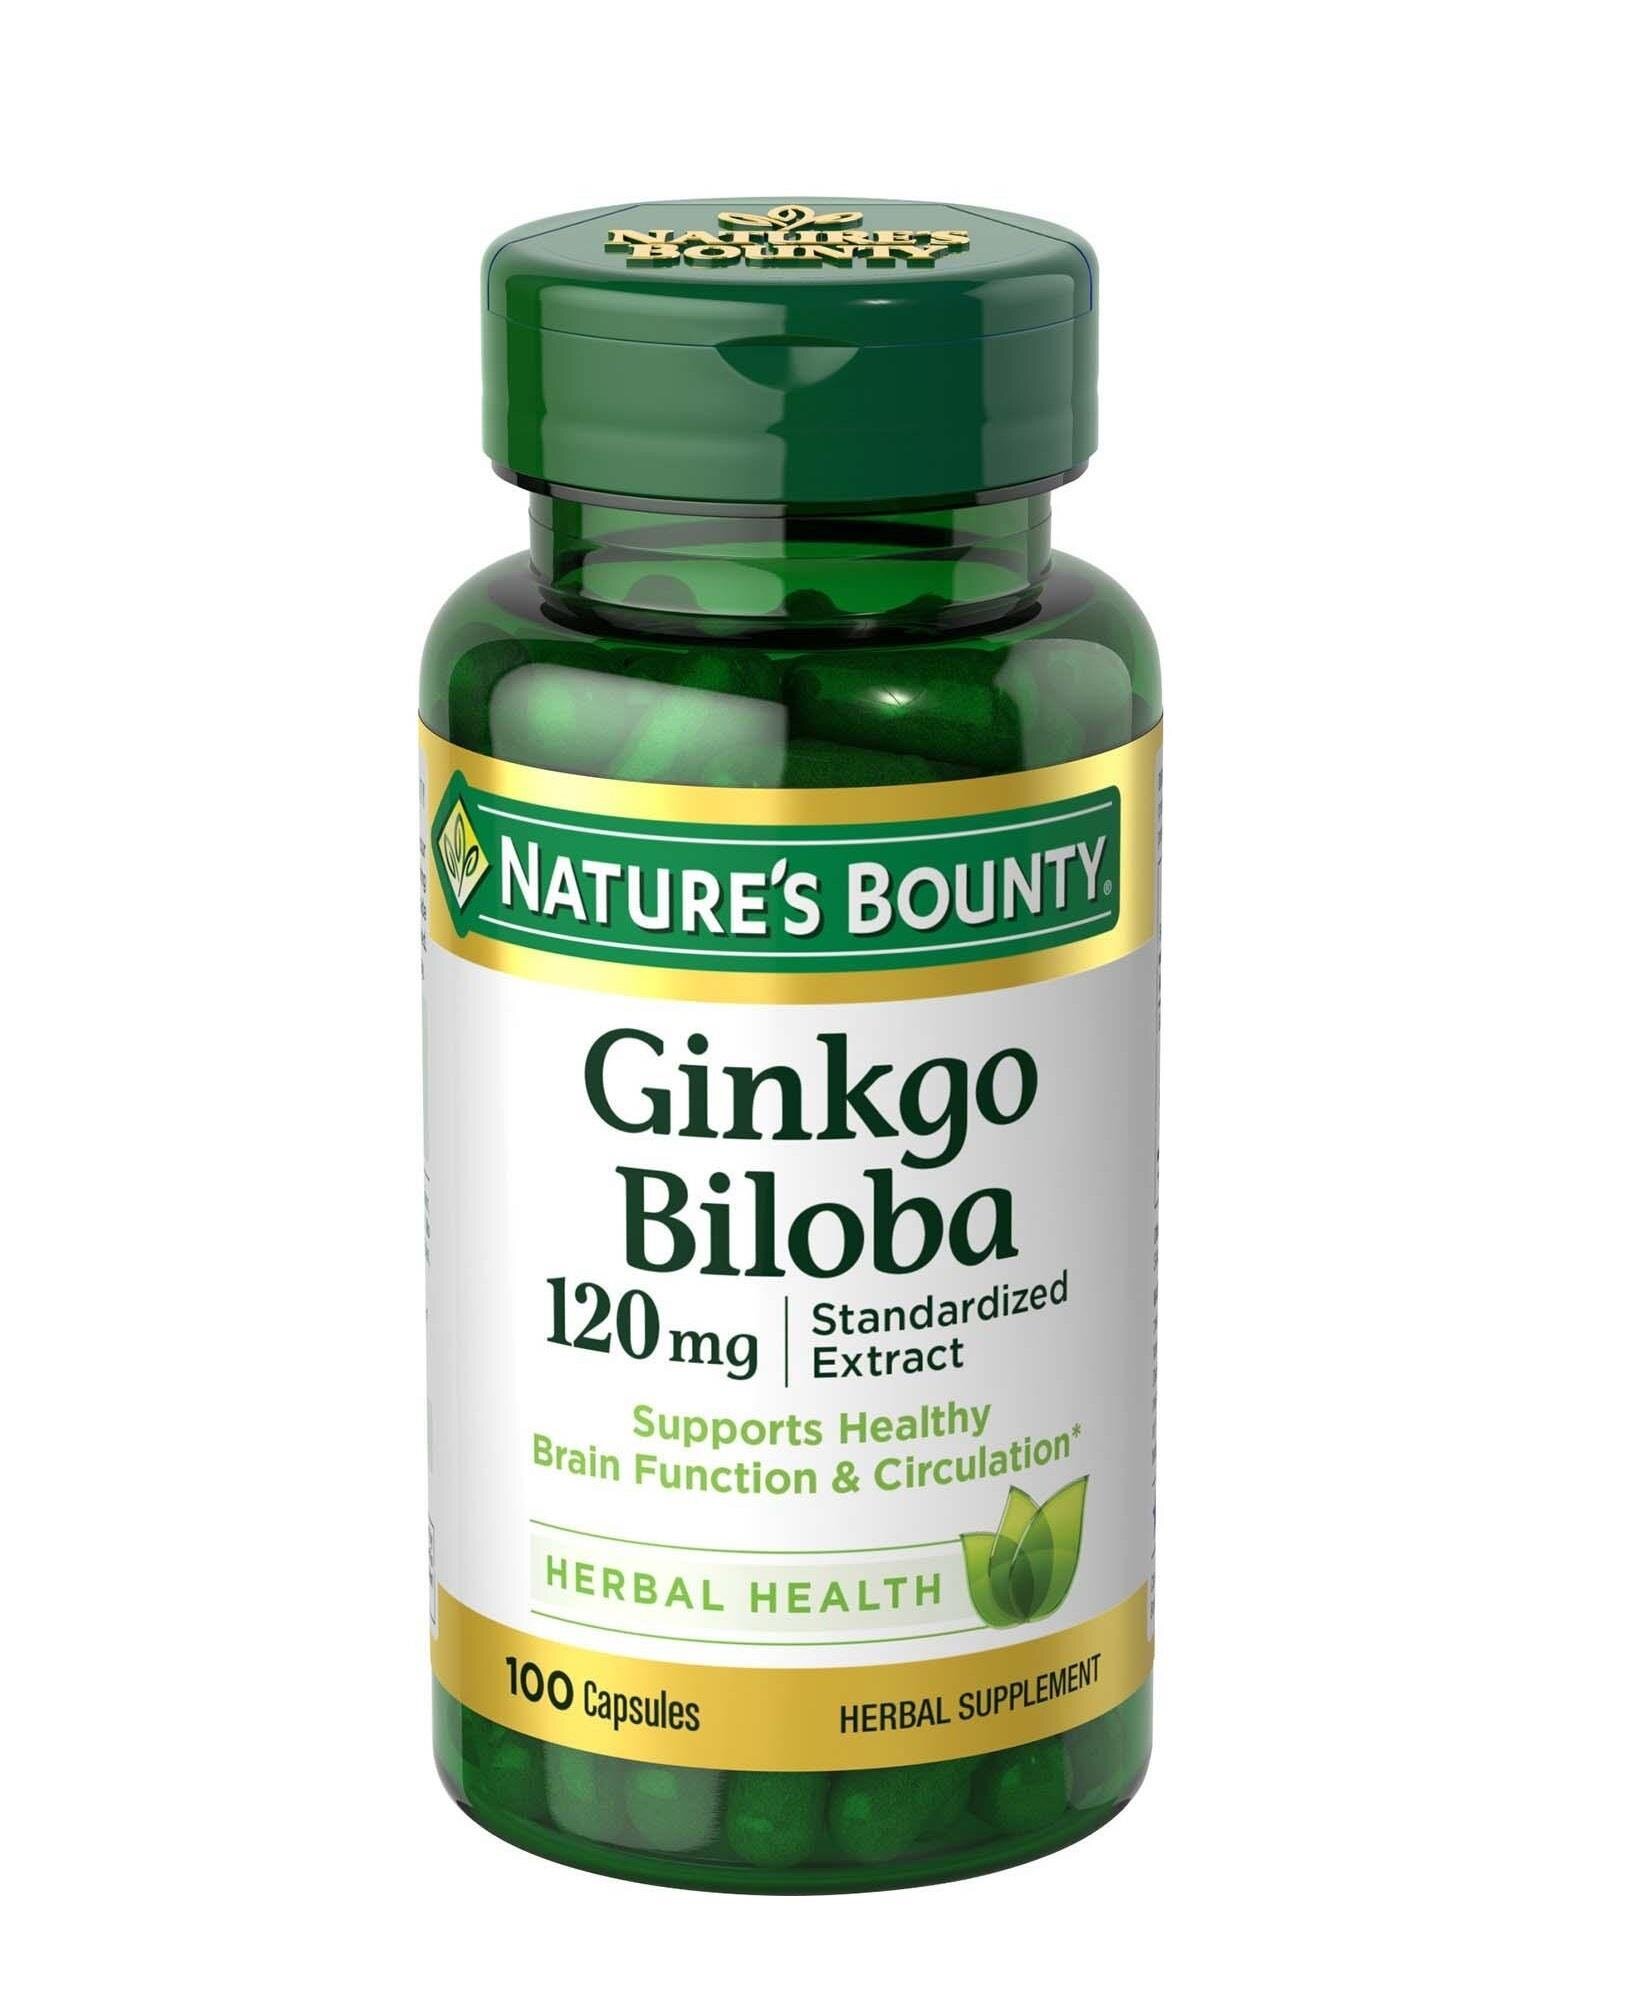 Nu-Health Ginkgo Biloba chiết xuất từ cây bạch quả giúp cải thiện trí nhớ (Nguồn: img.websosanh.vn)